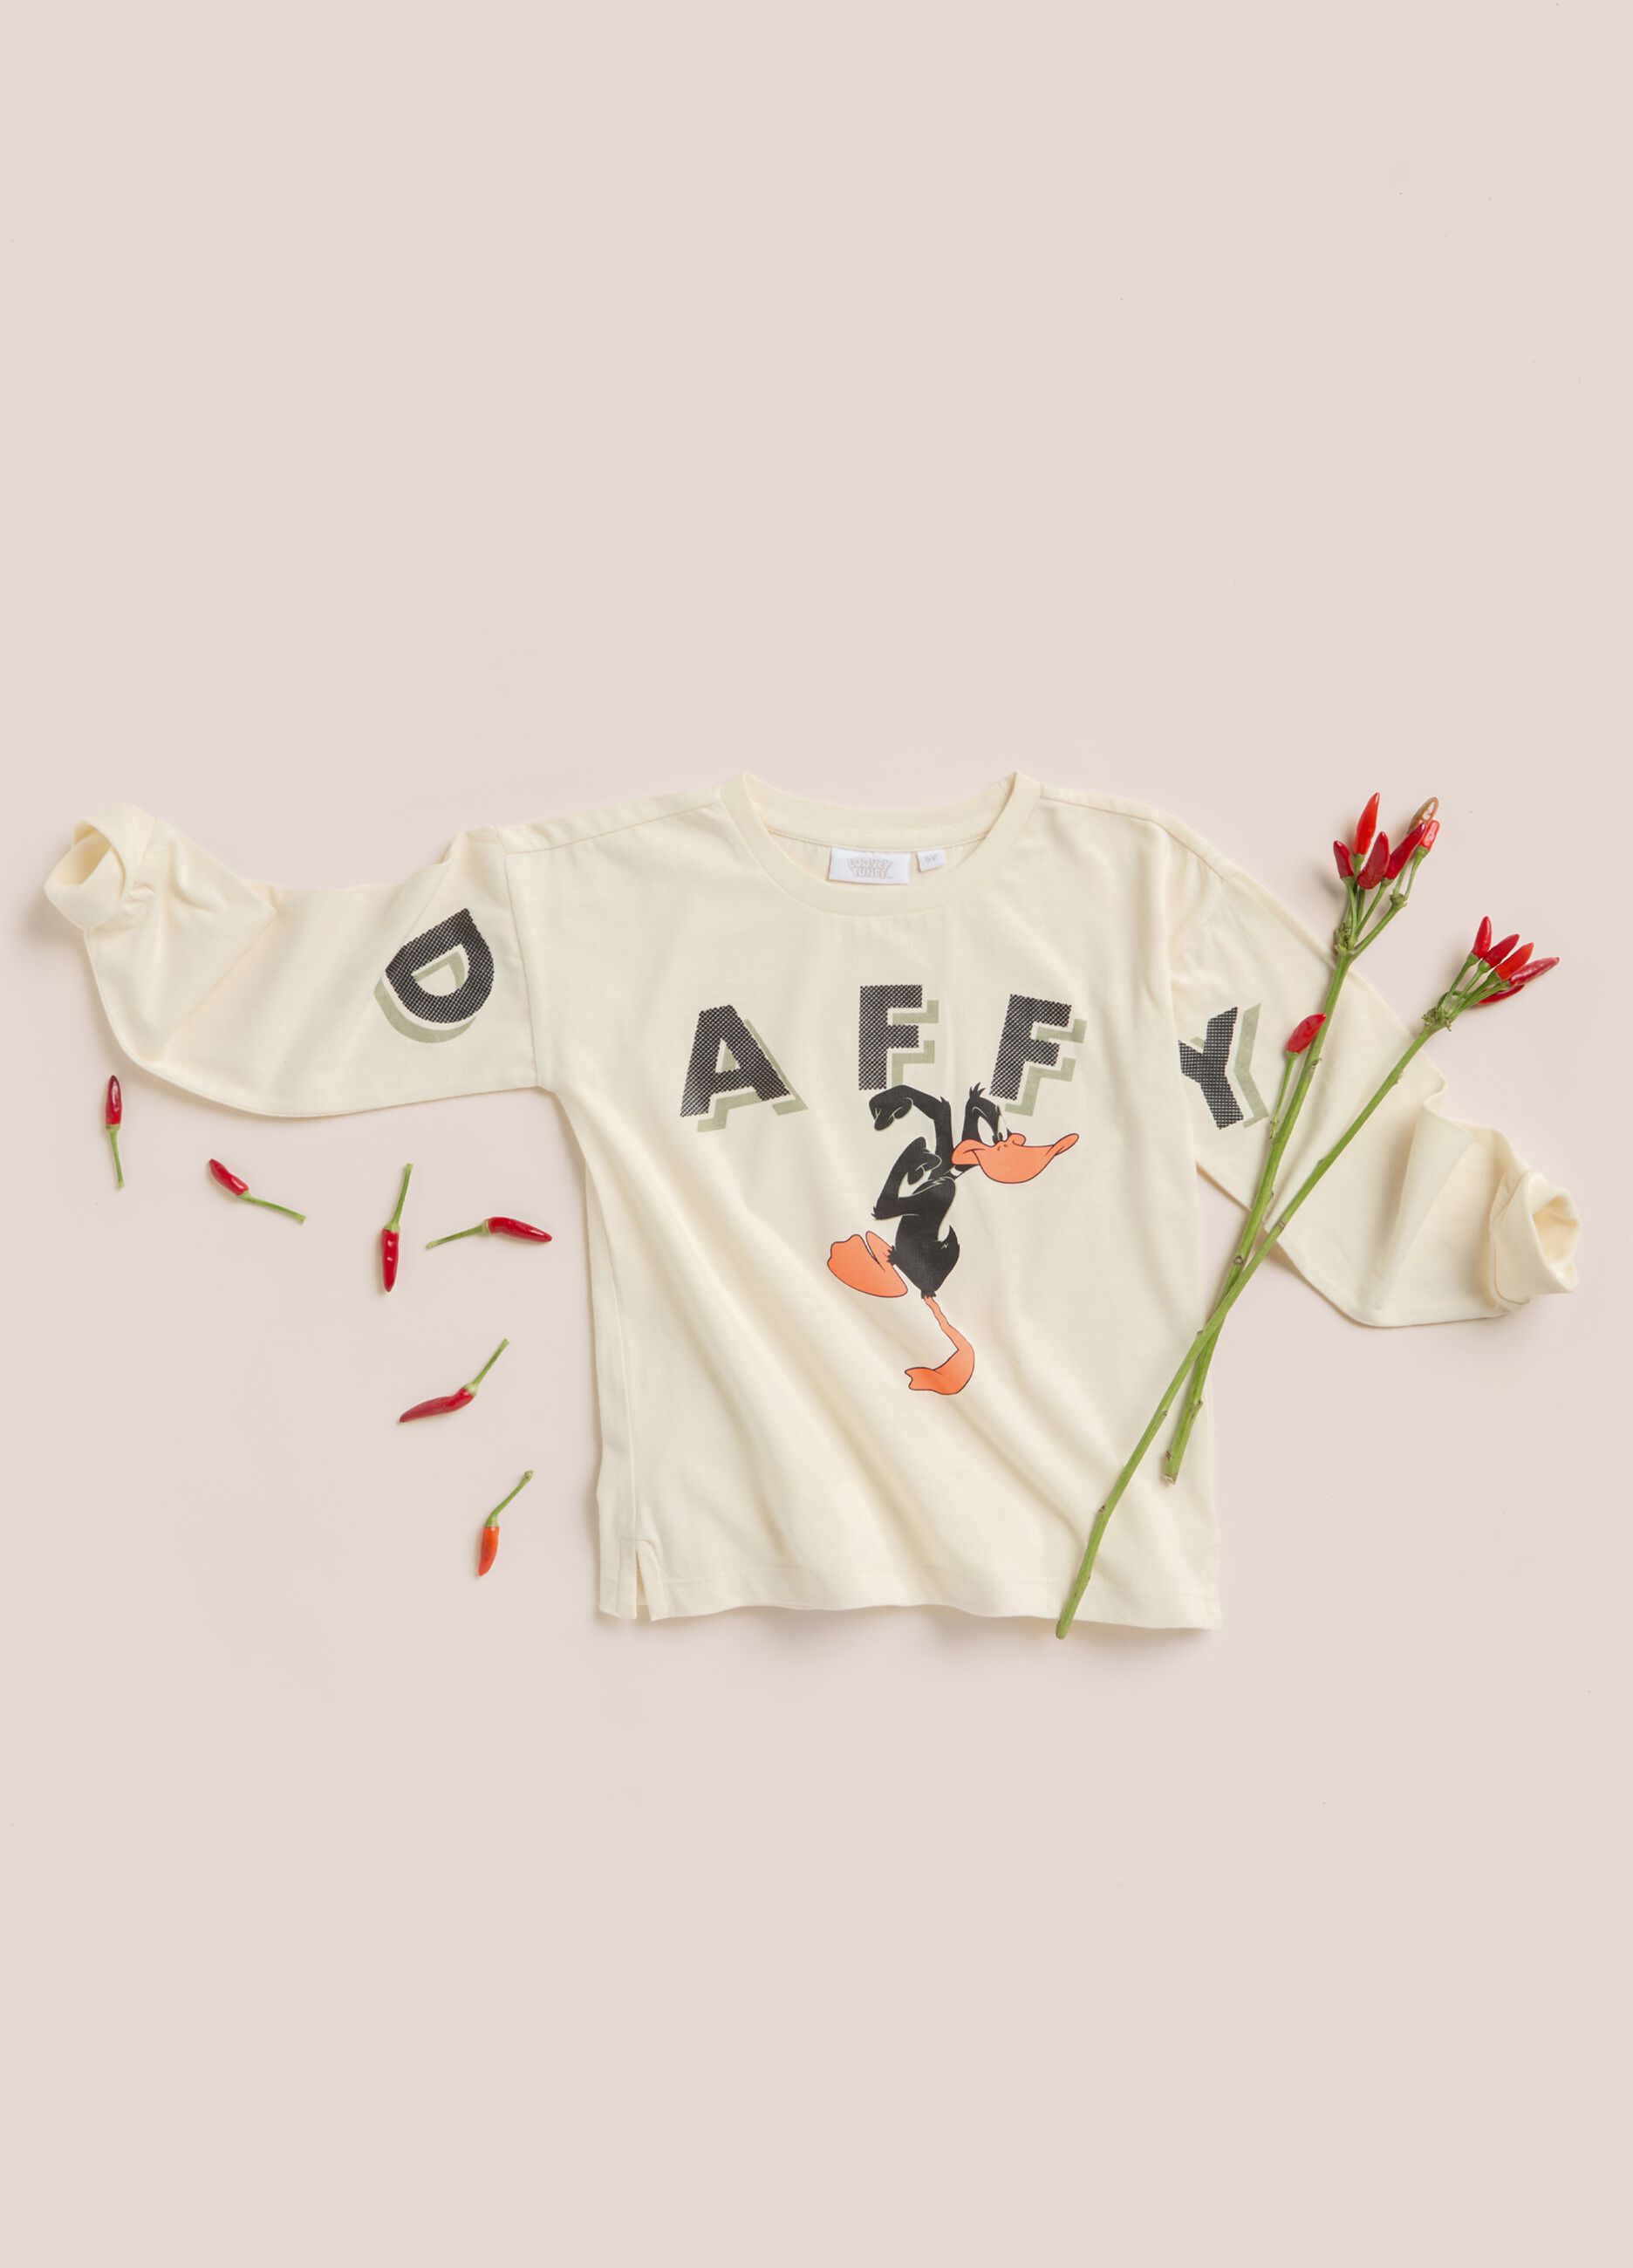 T-shirt Daffy Duck in puro cotone IANA bambino